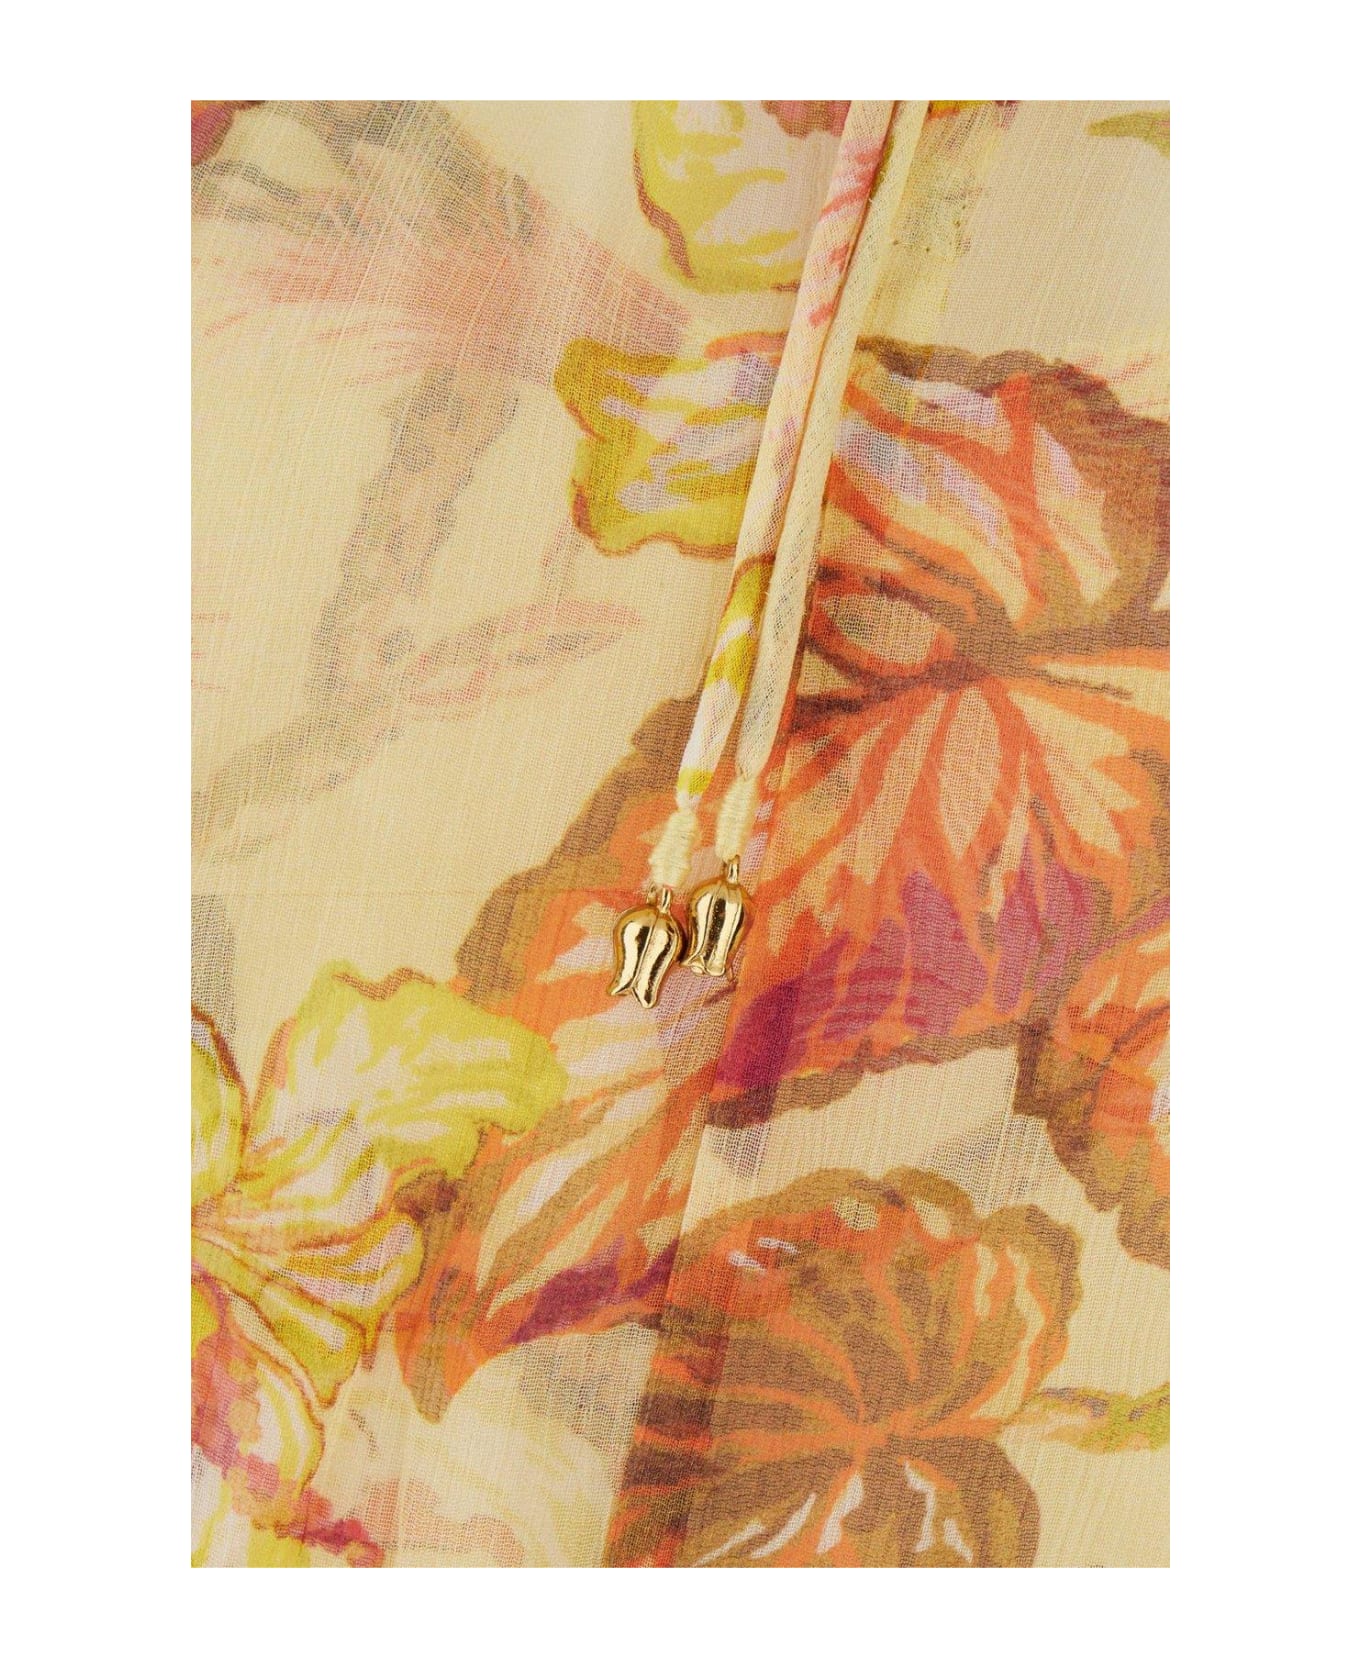 Zimmermann Crinkled Finish Floral-print Midi Dress - Giallo